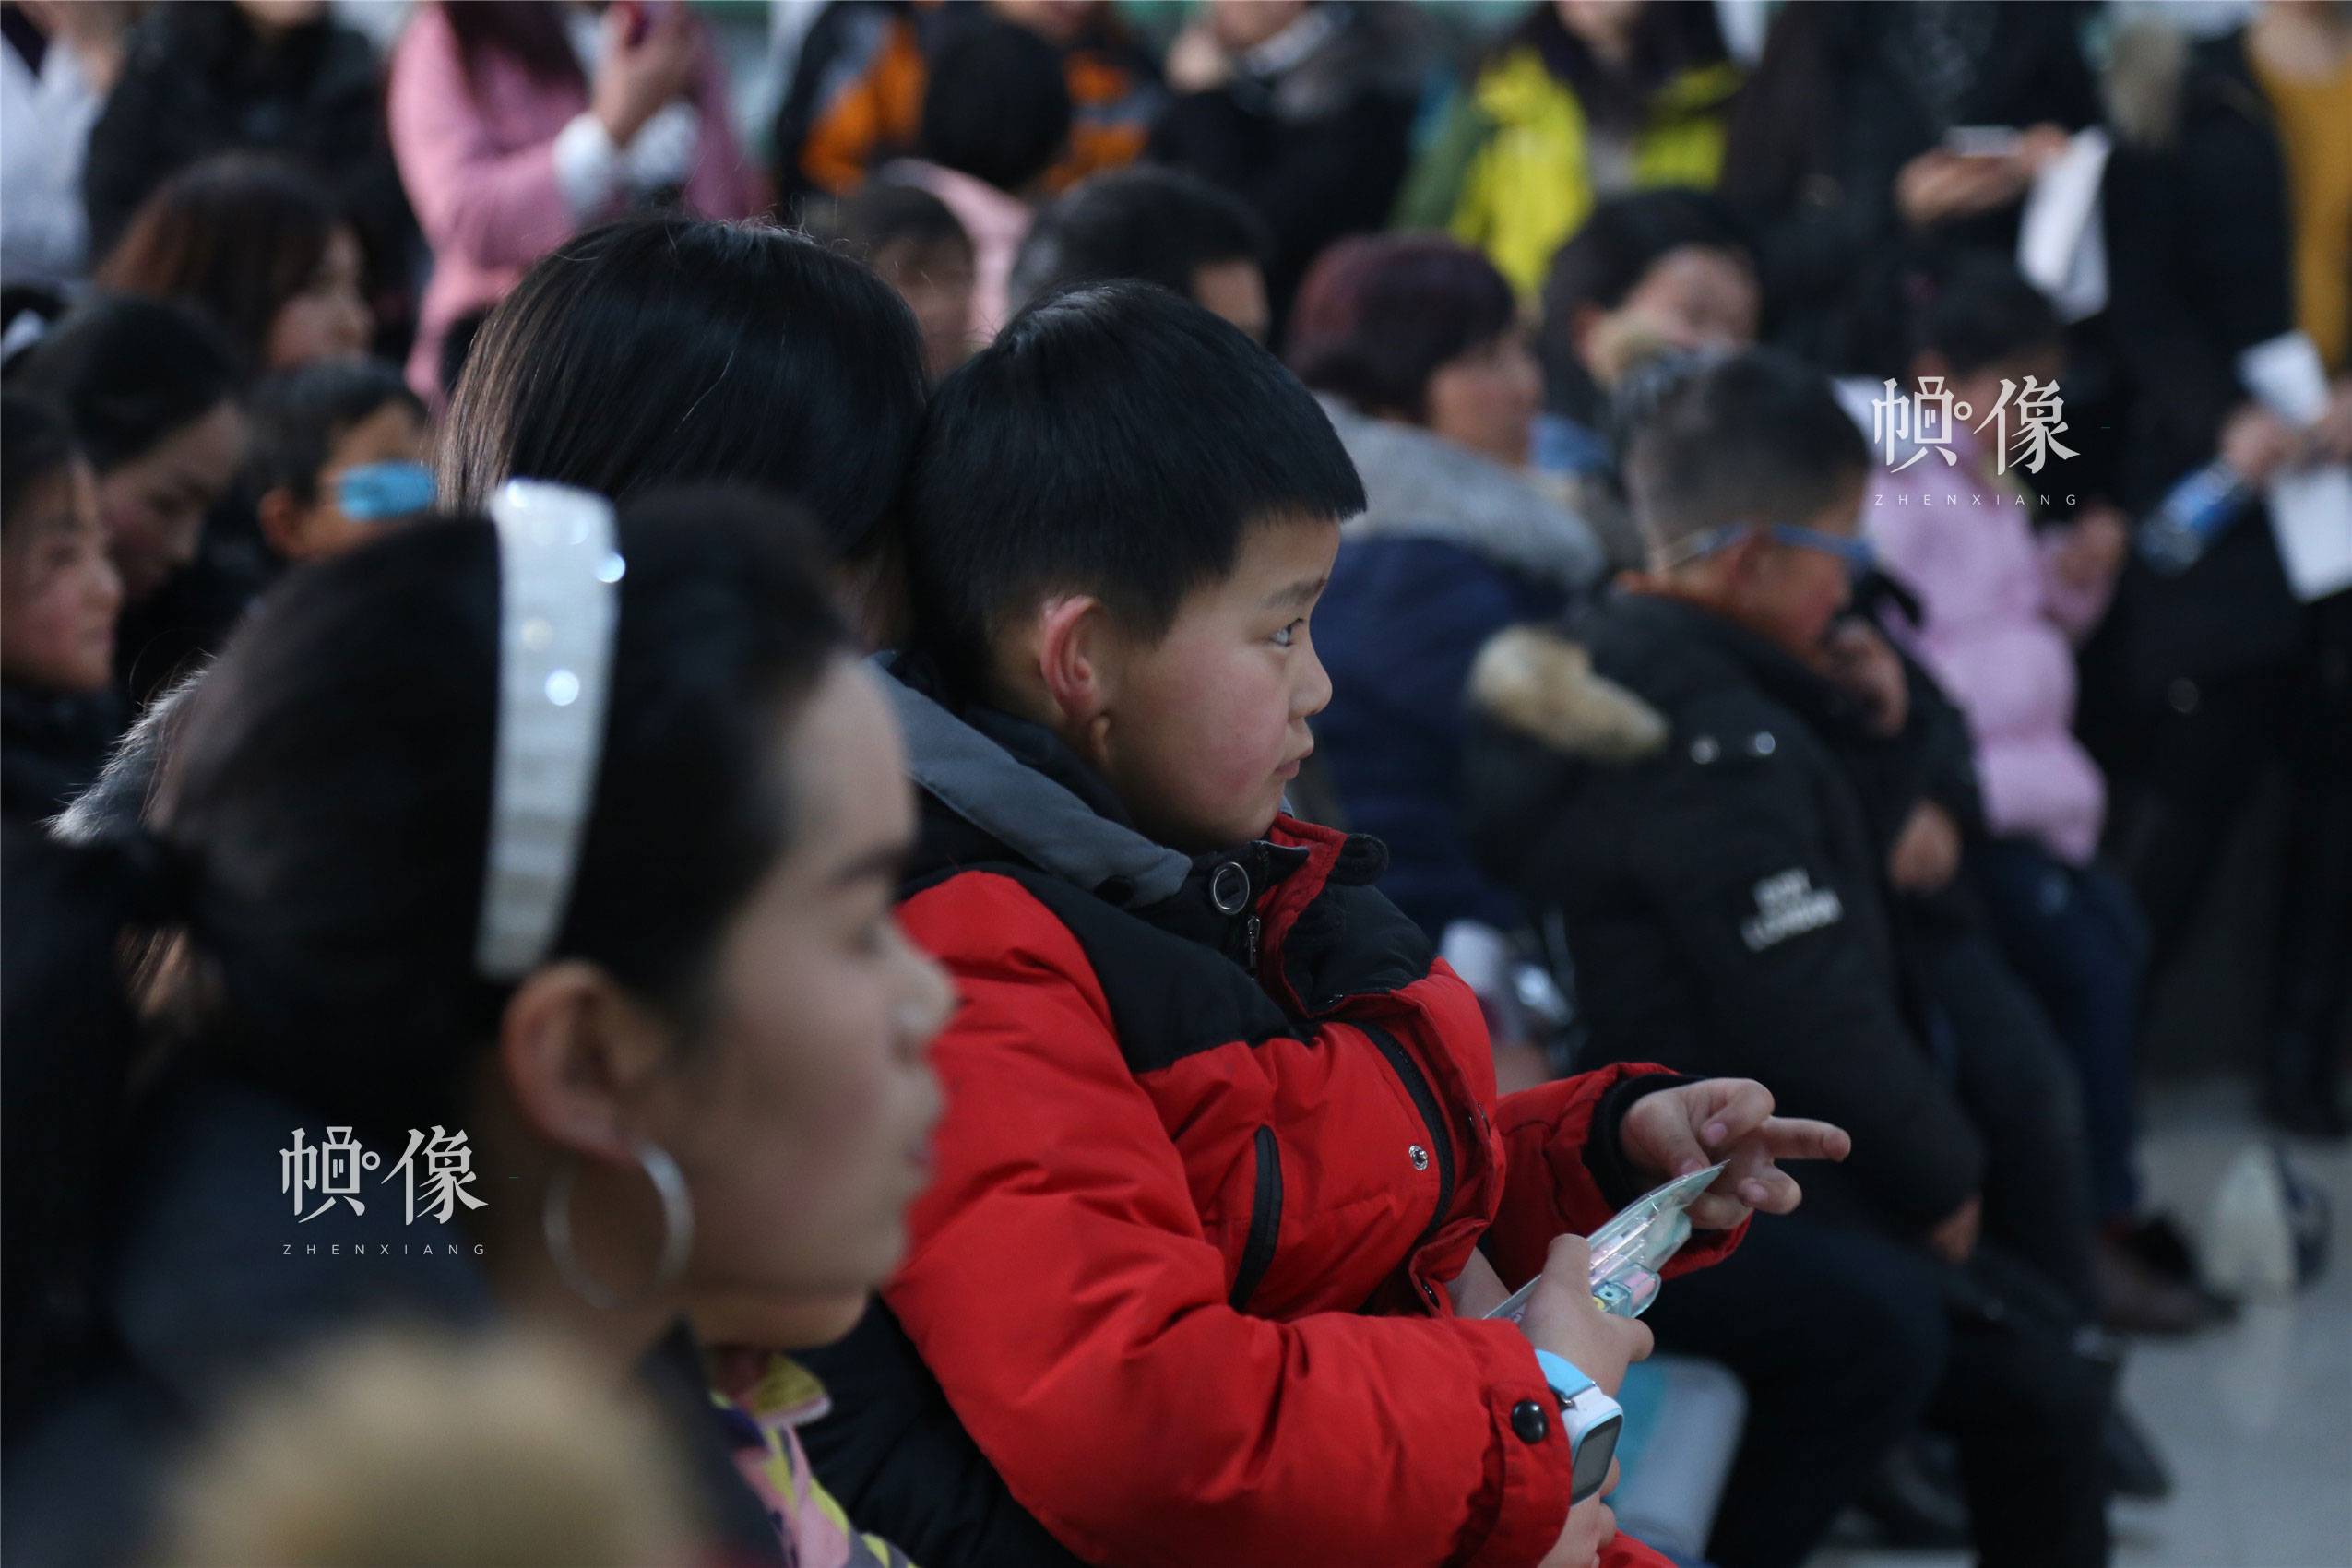  2018年1月21日，甘肃省陇南市西和县，“儿基会儿童听力视力筛查及治疗资助项目”启动仪式现场儿童。中国网实习记者 朱珊杉 摄